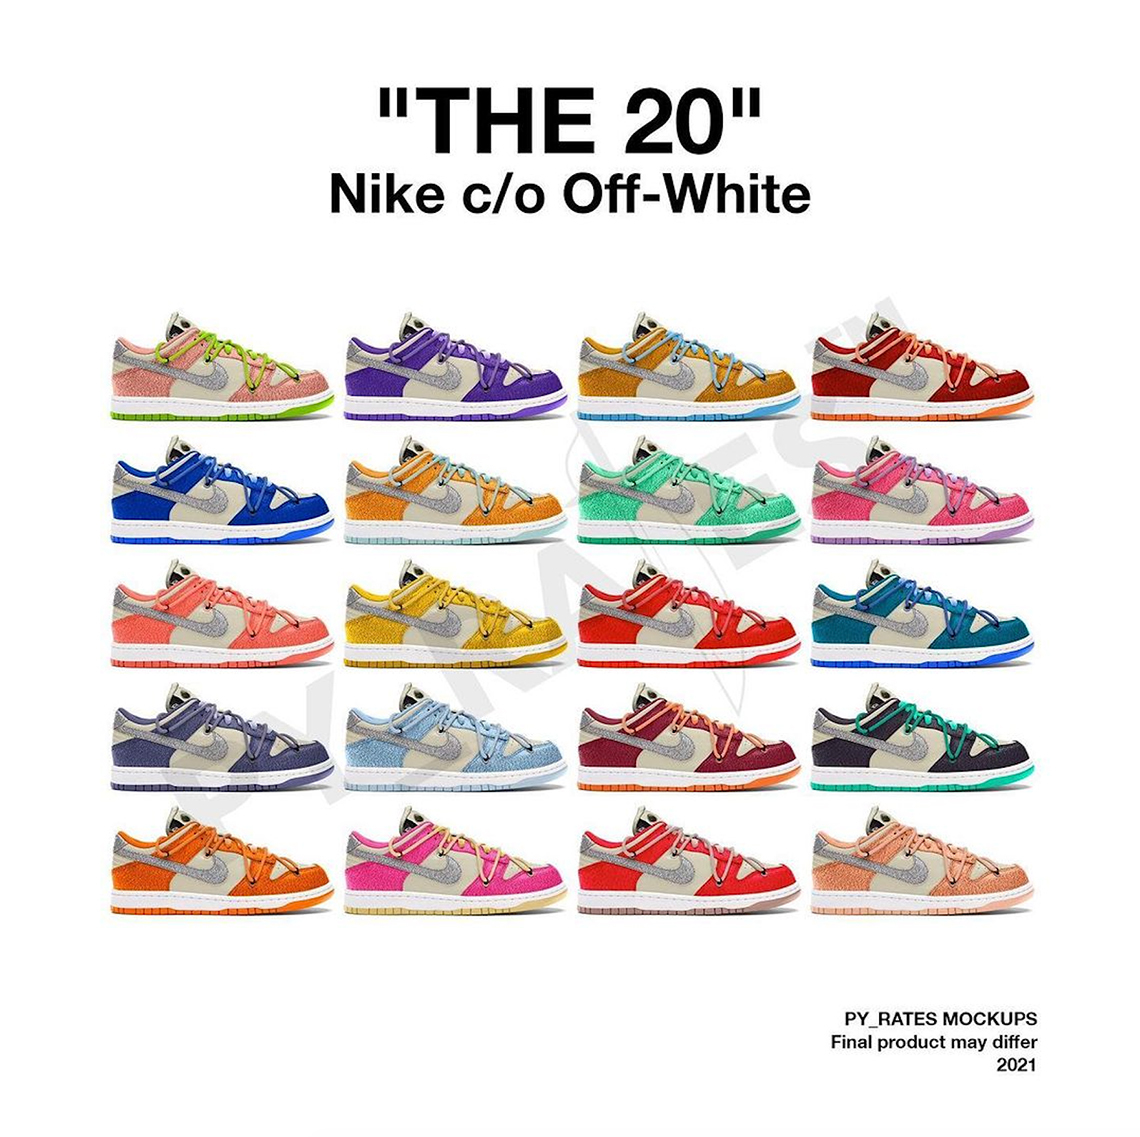 Tiếp nối 'cơ đồ' năm xưa còn dang dở, trong năm 2021 Off-white lại tiếp tục cho ra mắt 50 đôi Nike Dunk với tông màu chủ đạo trắng - xám phối cùng dây thắt giày, bảng màu đơn sắc nổi bật. Phiên bản swoosh ánh kim sẽ là những thiết kế nổi bật và khác biệt so với các mẫu còn lại.